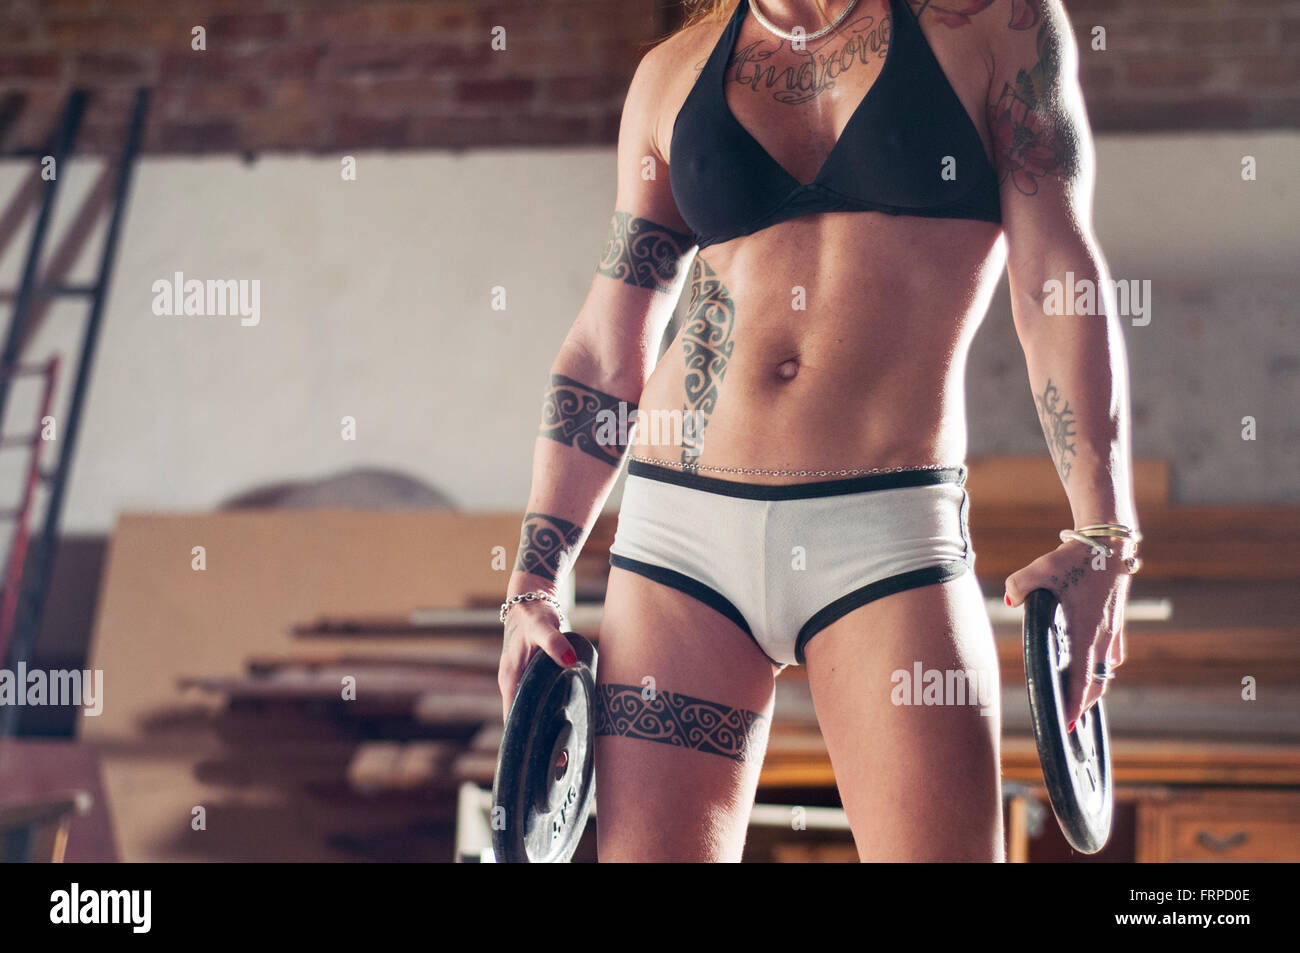 Athletische tätowierte Frau Gewichte in ihren Händen hält. Stockfoto